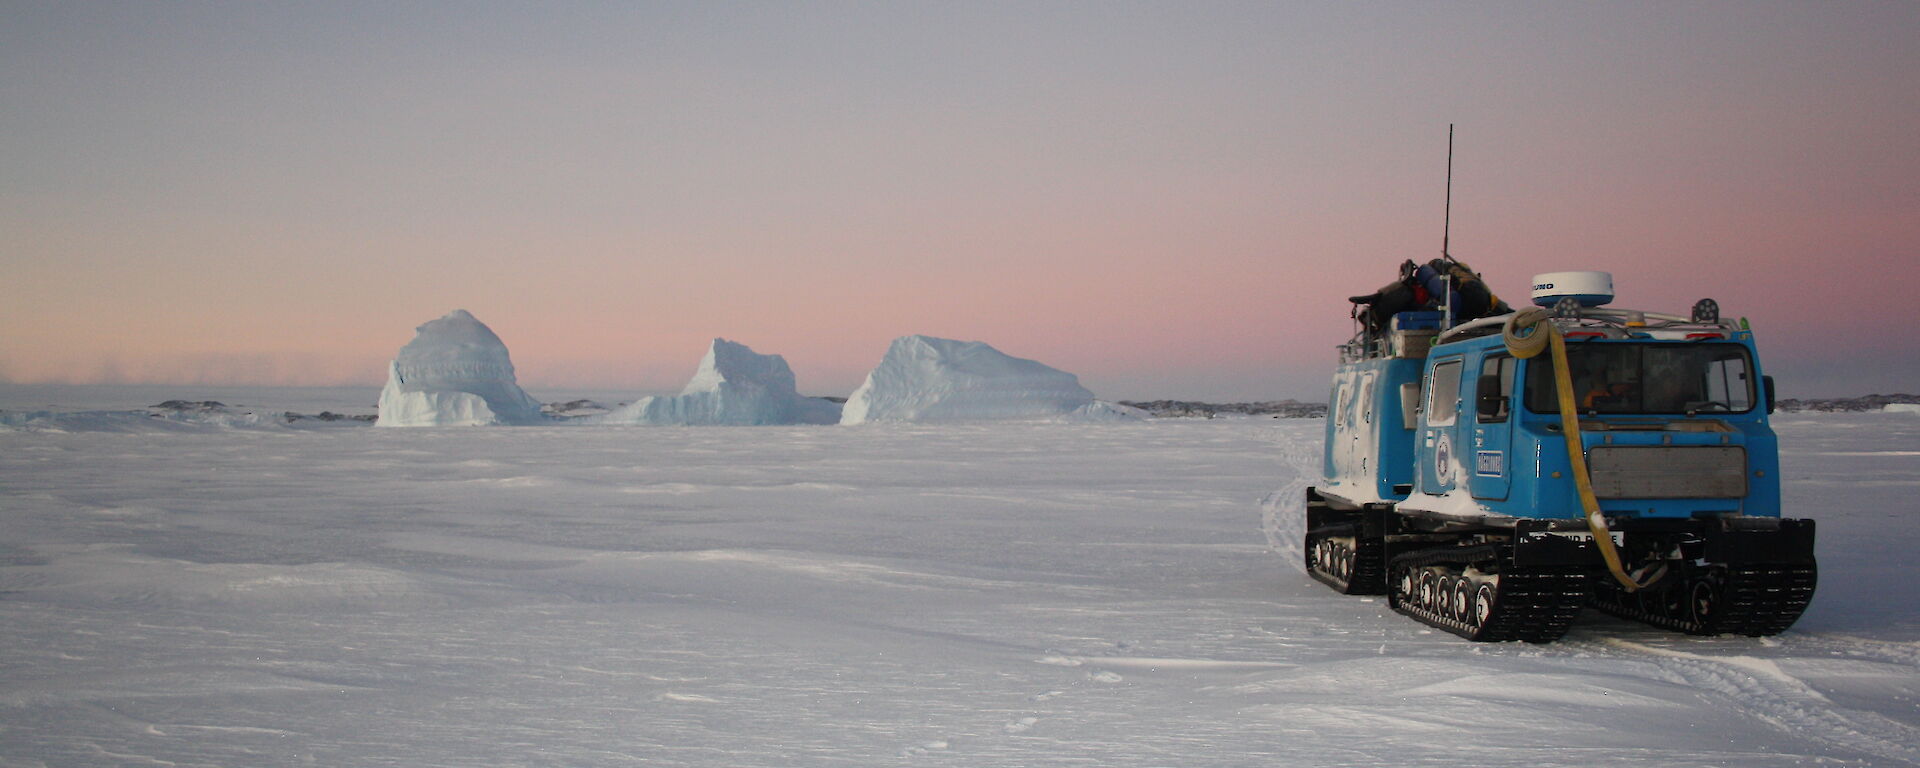 Hagglund on sea ice